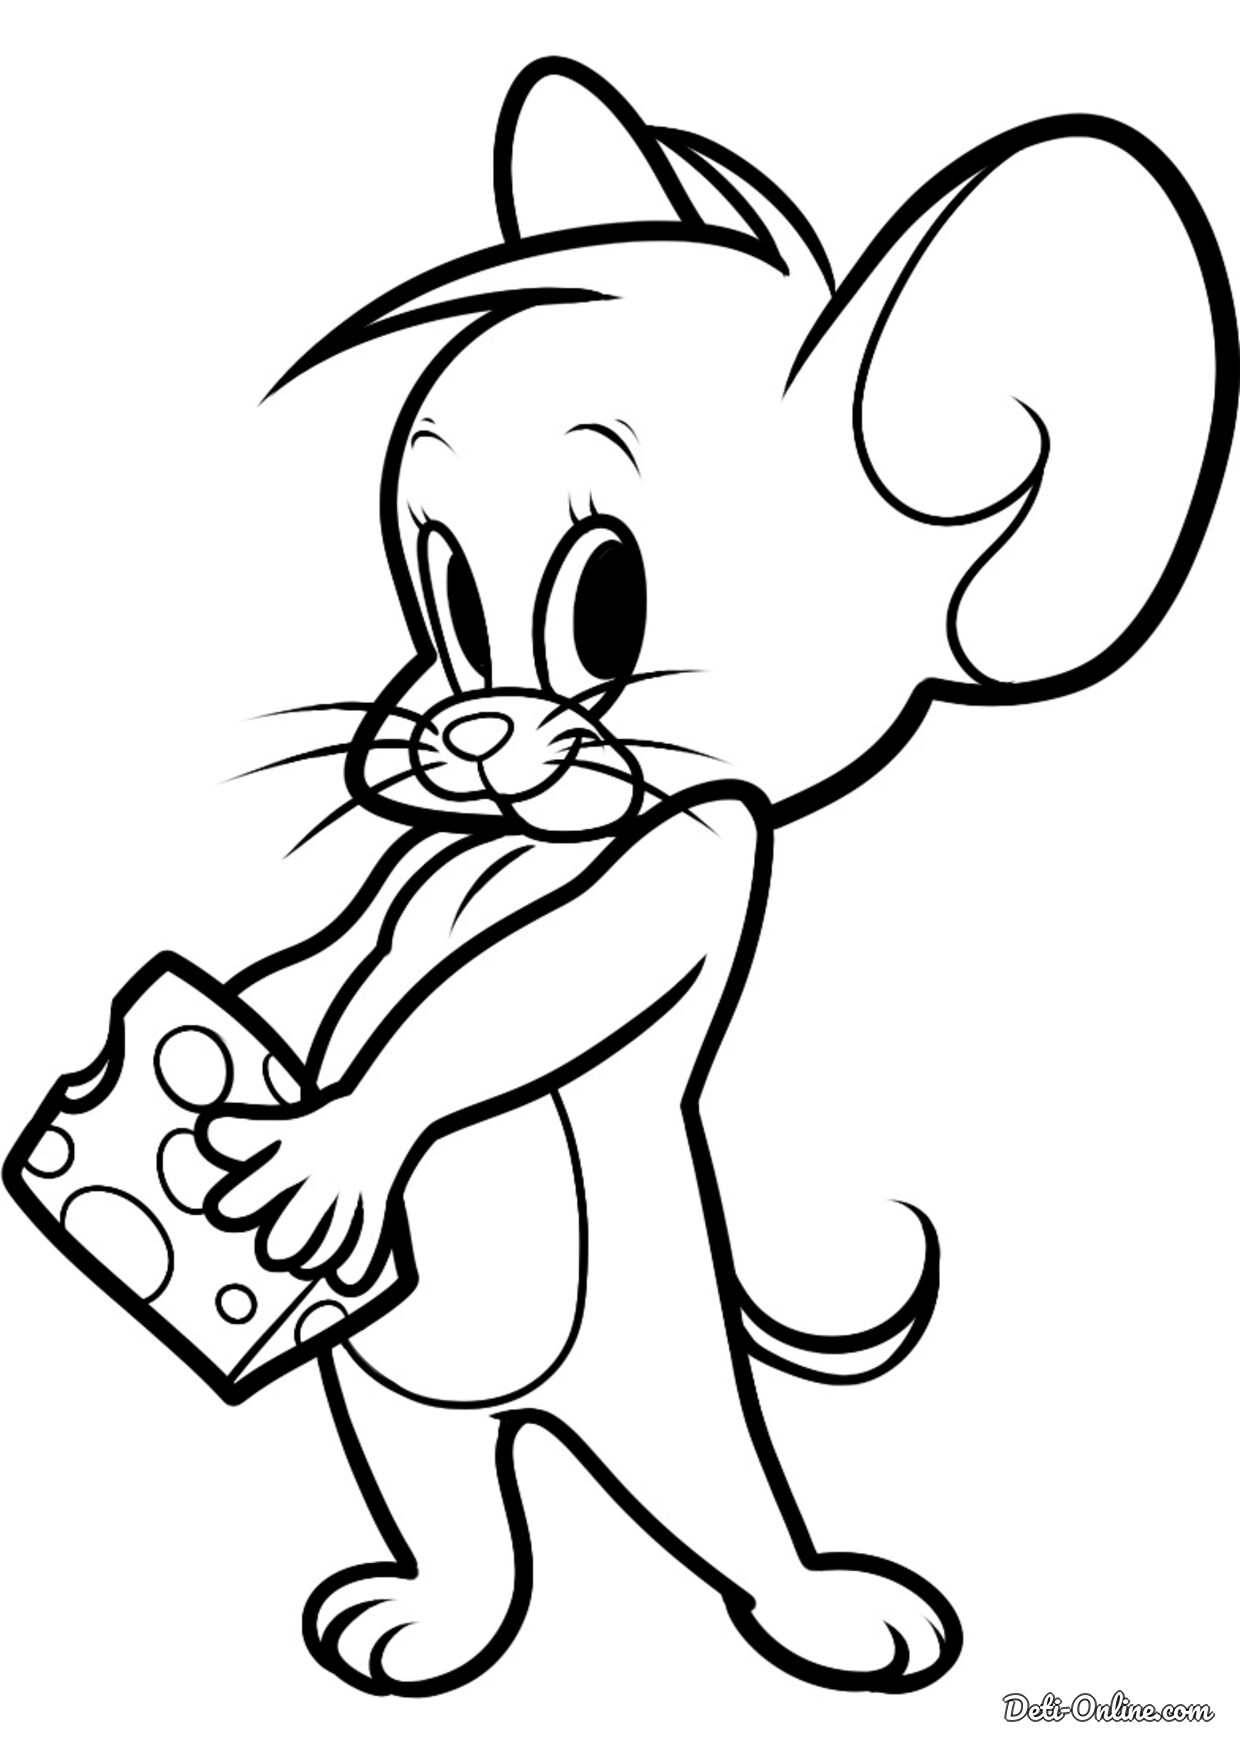 Том герой рисовать. Мышонок Джерри раскраска. Раскраска для детей Disney Tom Jerry. Мультяшные рисунки. Мышь раскраска.